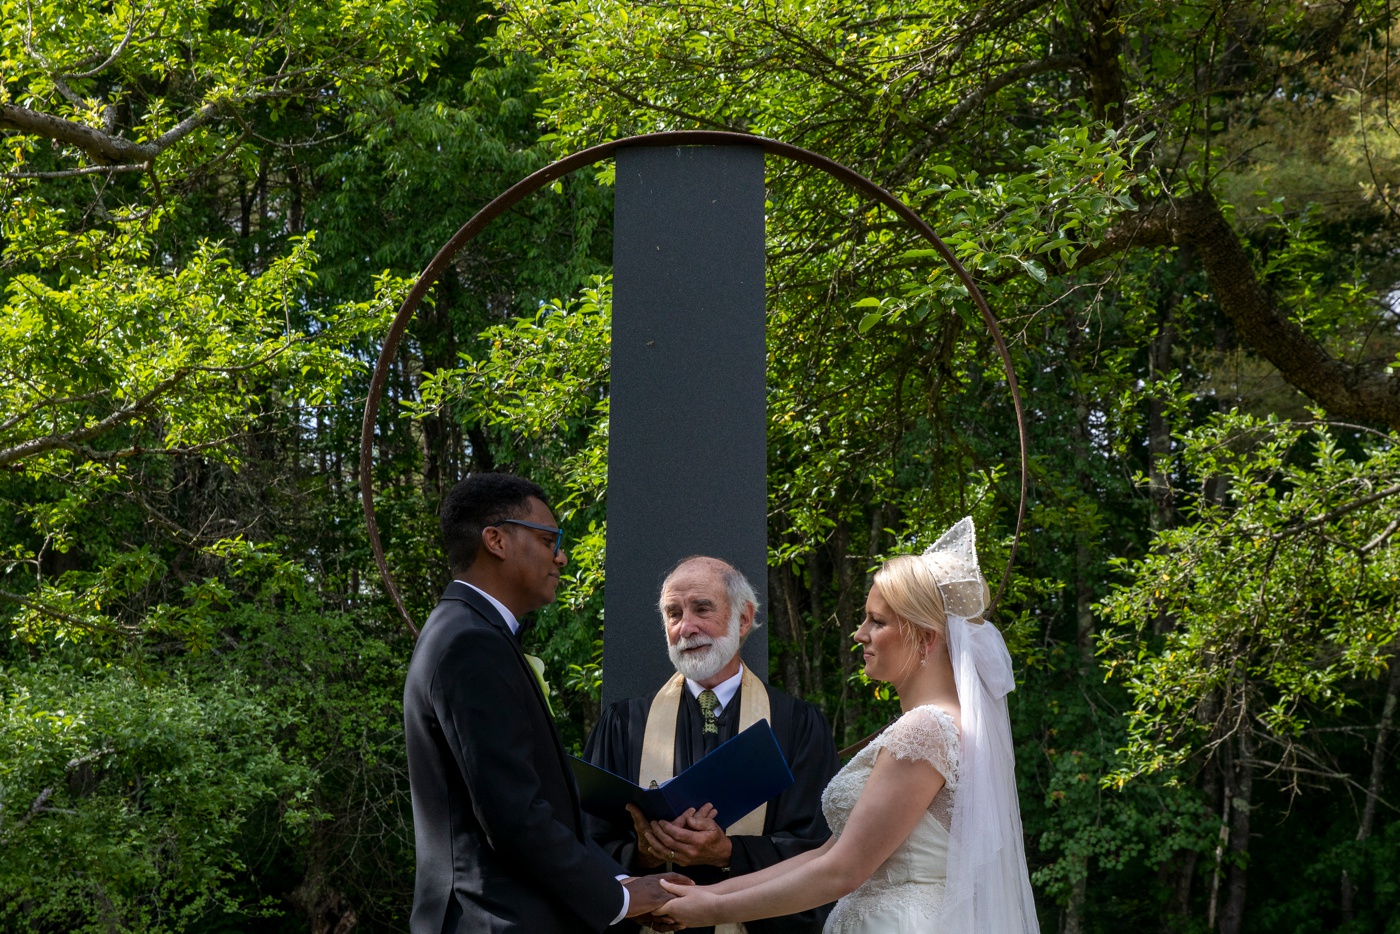 Backyard wedding ceremony in New England